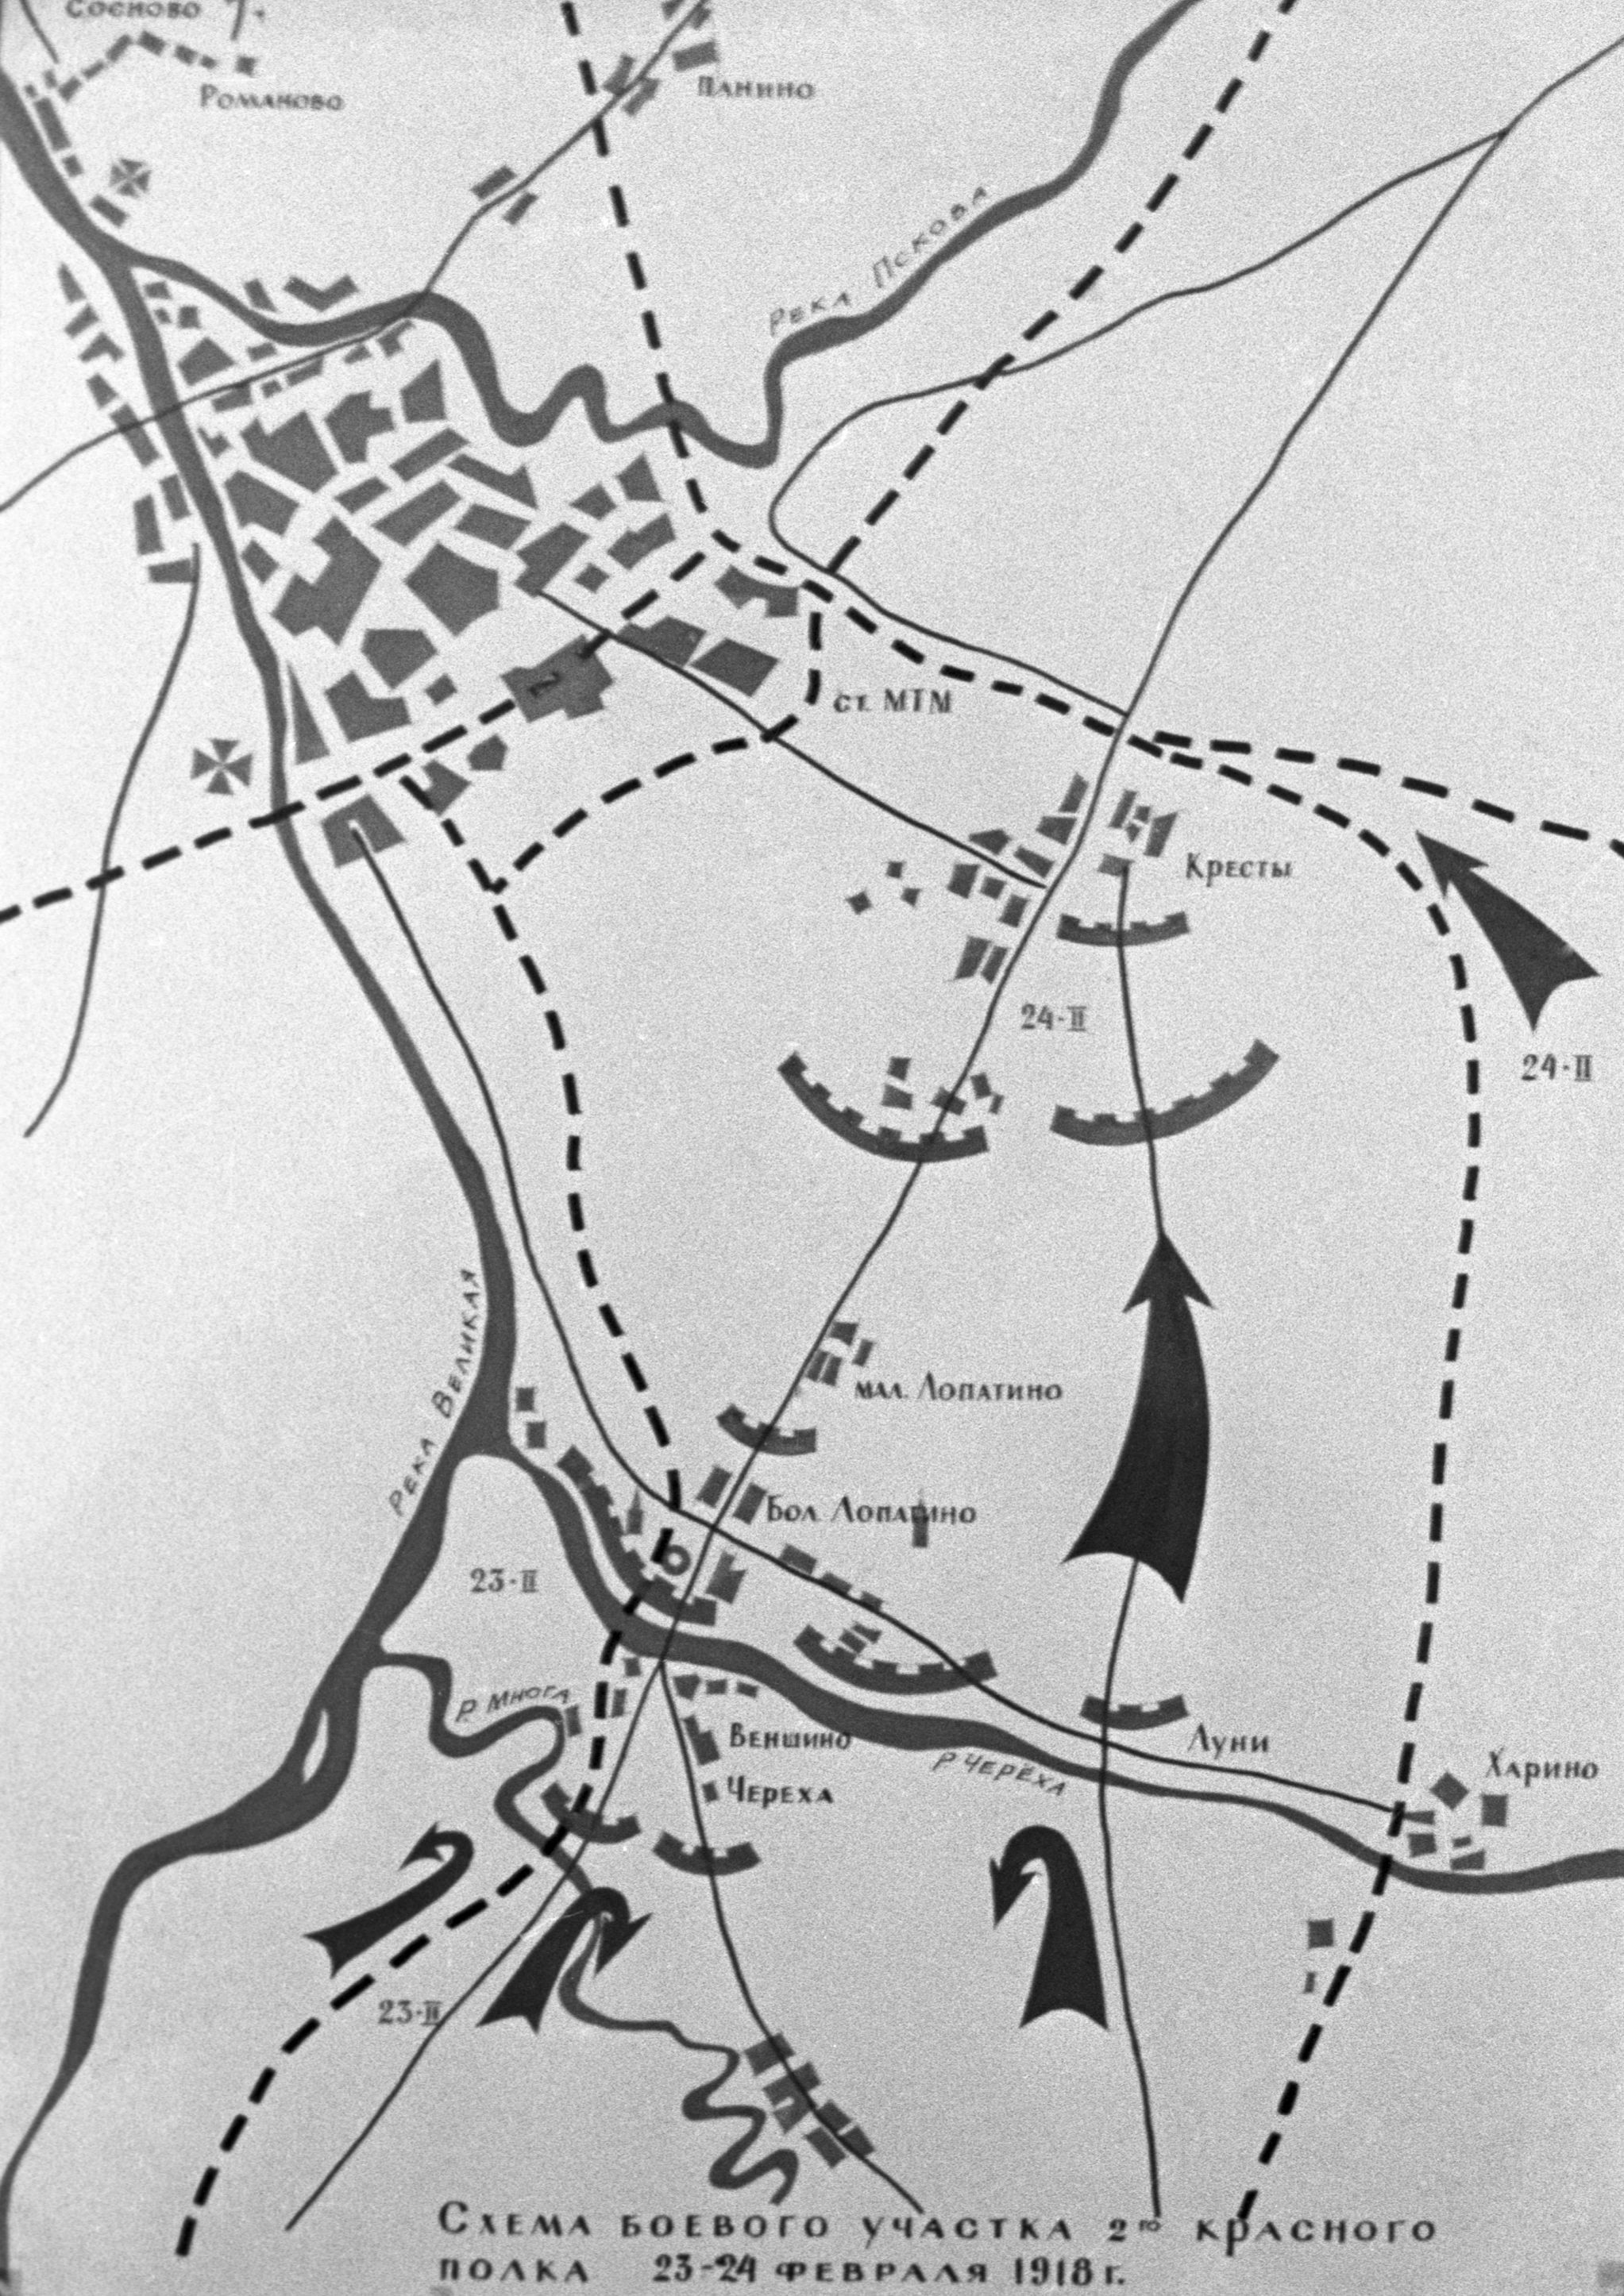 Схема боевого участка 2-ого Красного полка 23—24 февраля 1918 года.